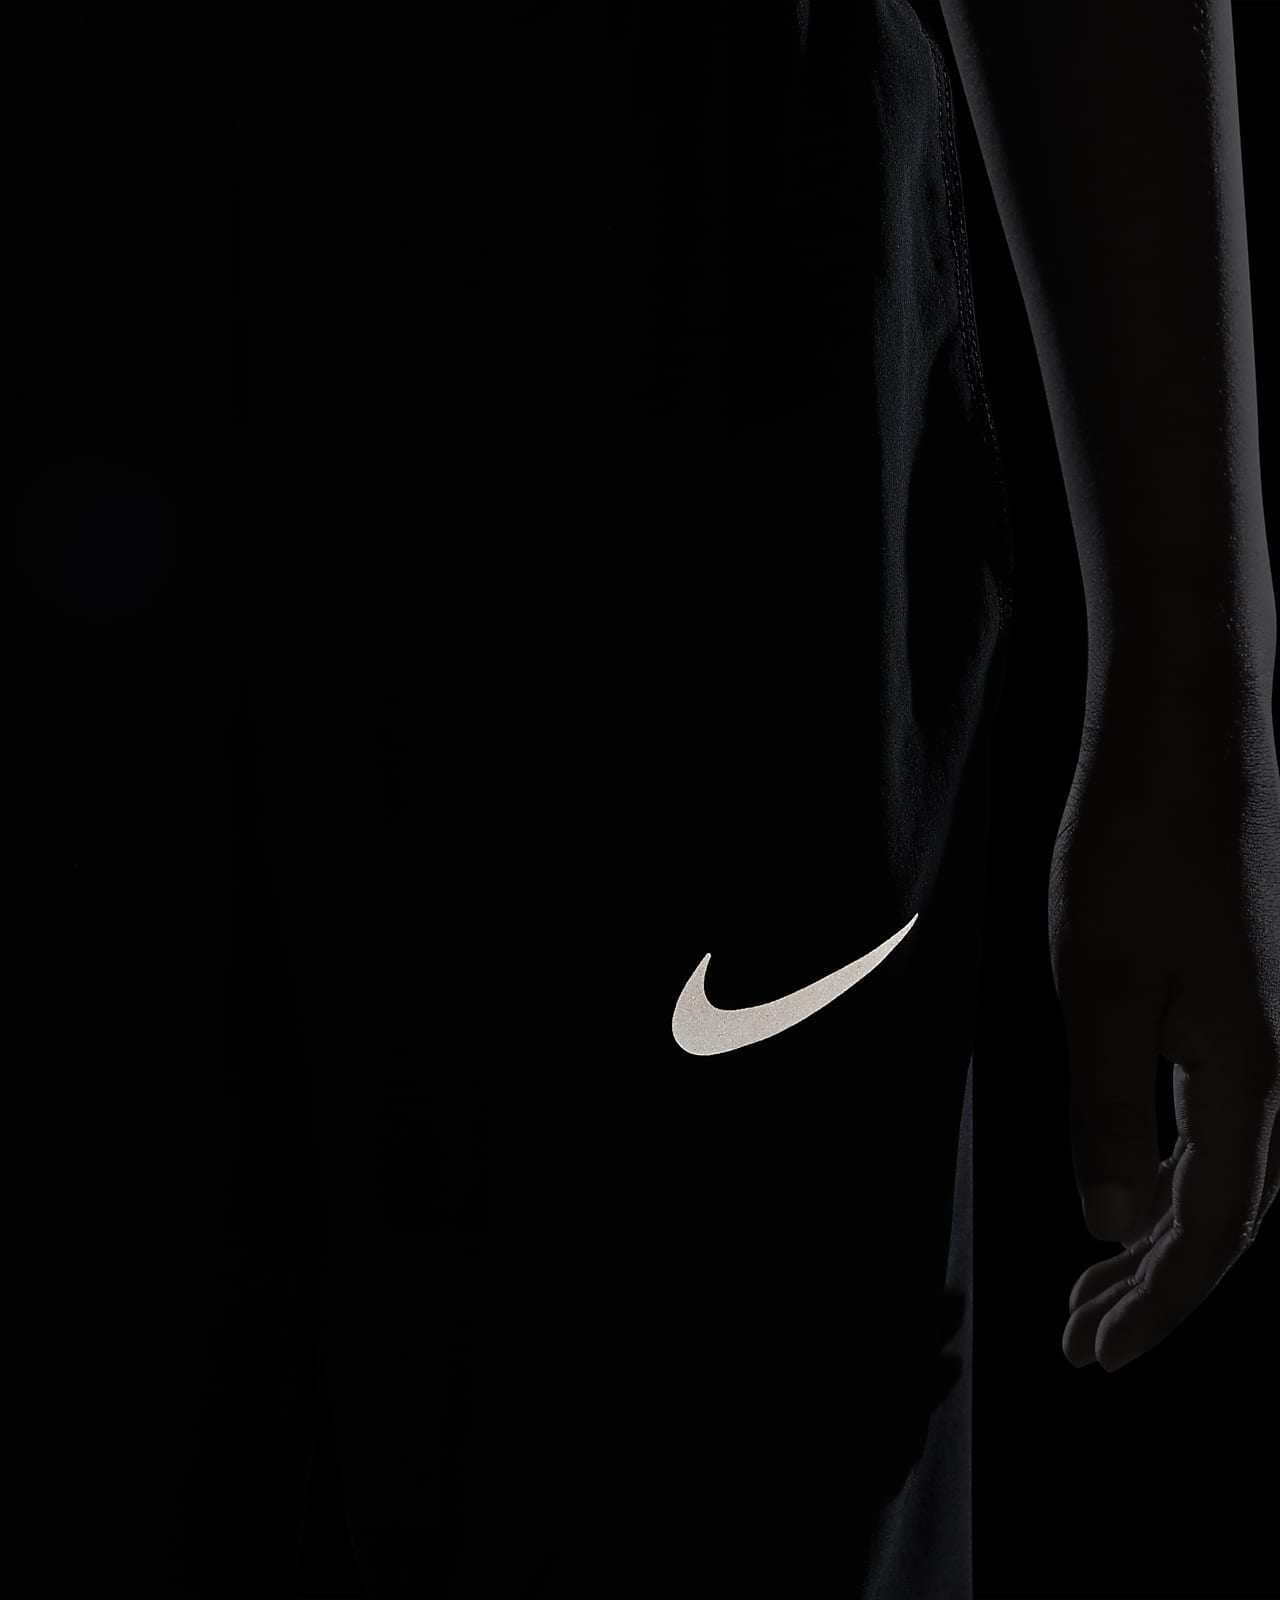 [26+] Nike Boy Wallpapers | WallpaperSafari.com